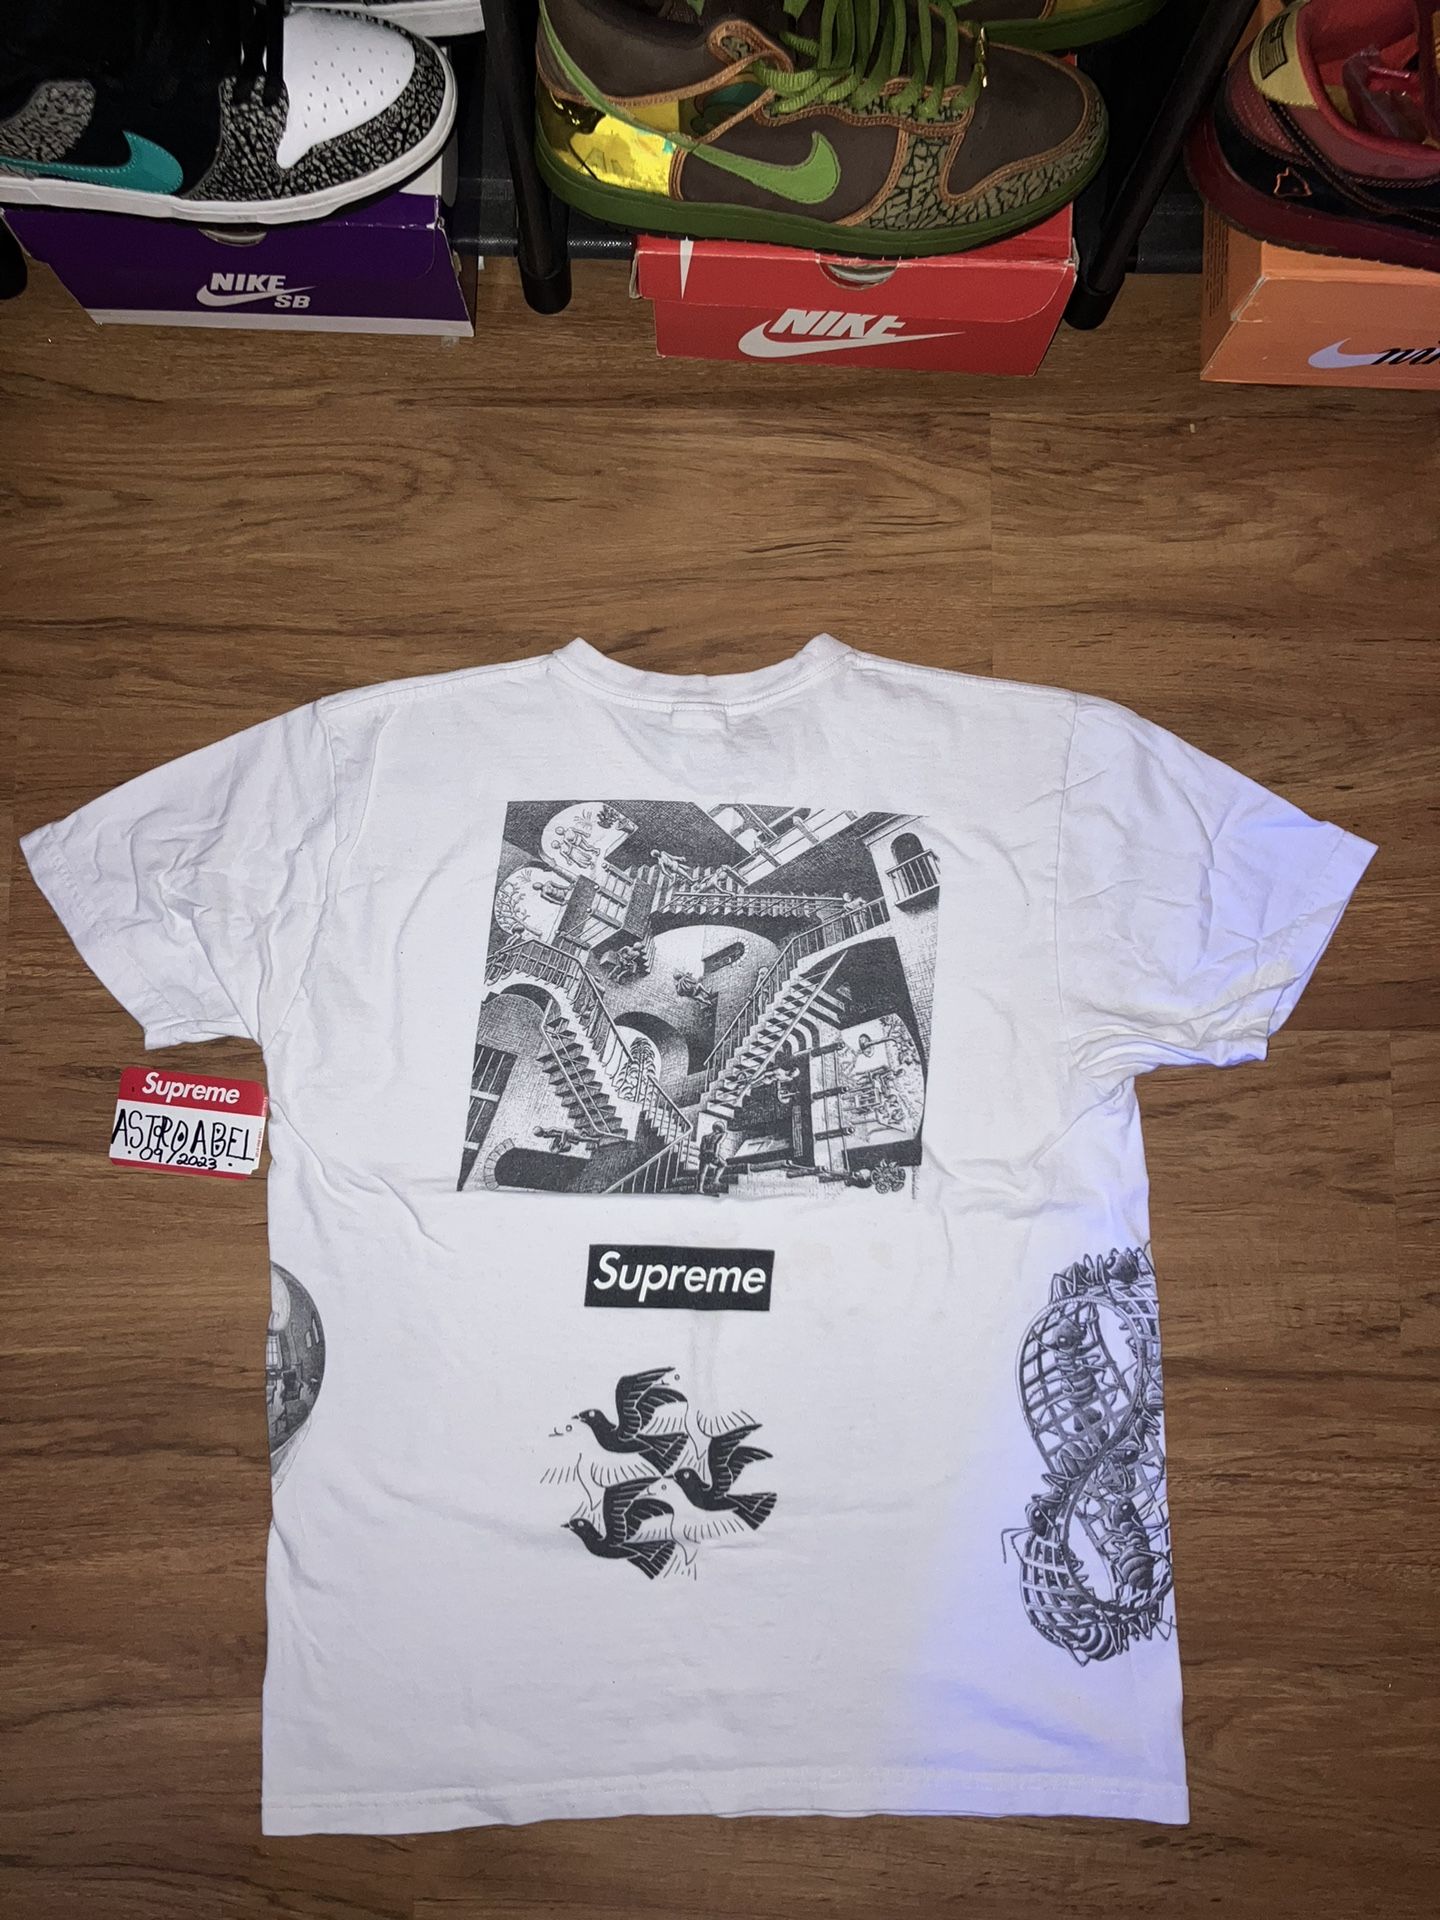 S/S 17’ Rare Supreme x MC ESHER White Large T-Shirt 